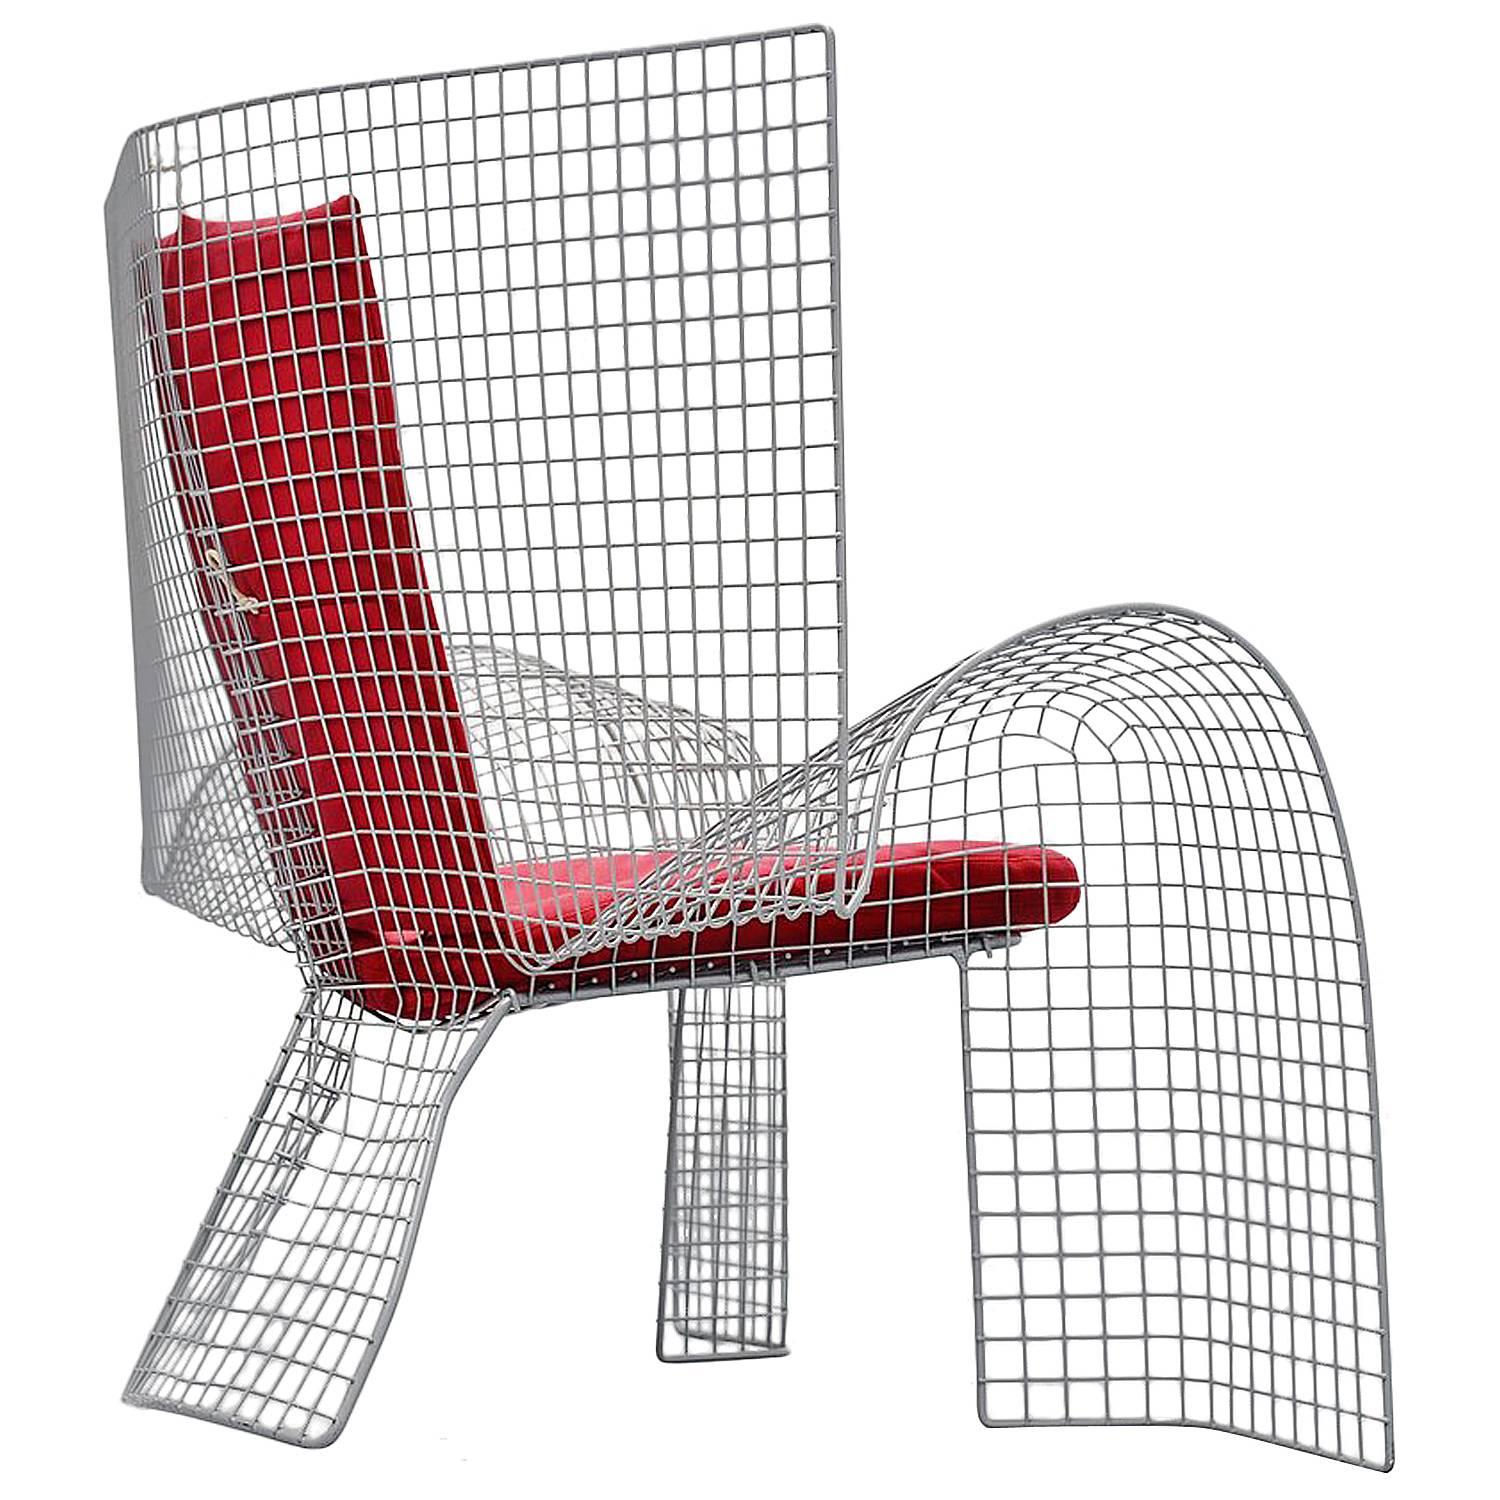 Volare Chair by D'Urbino, Lomazzi e Mittermair for Zerodesigno, 1992